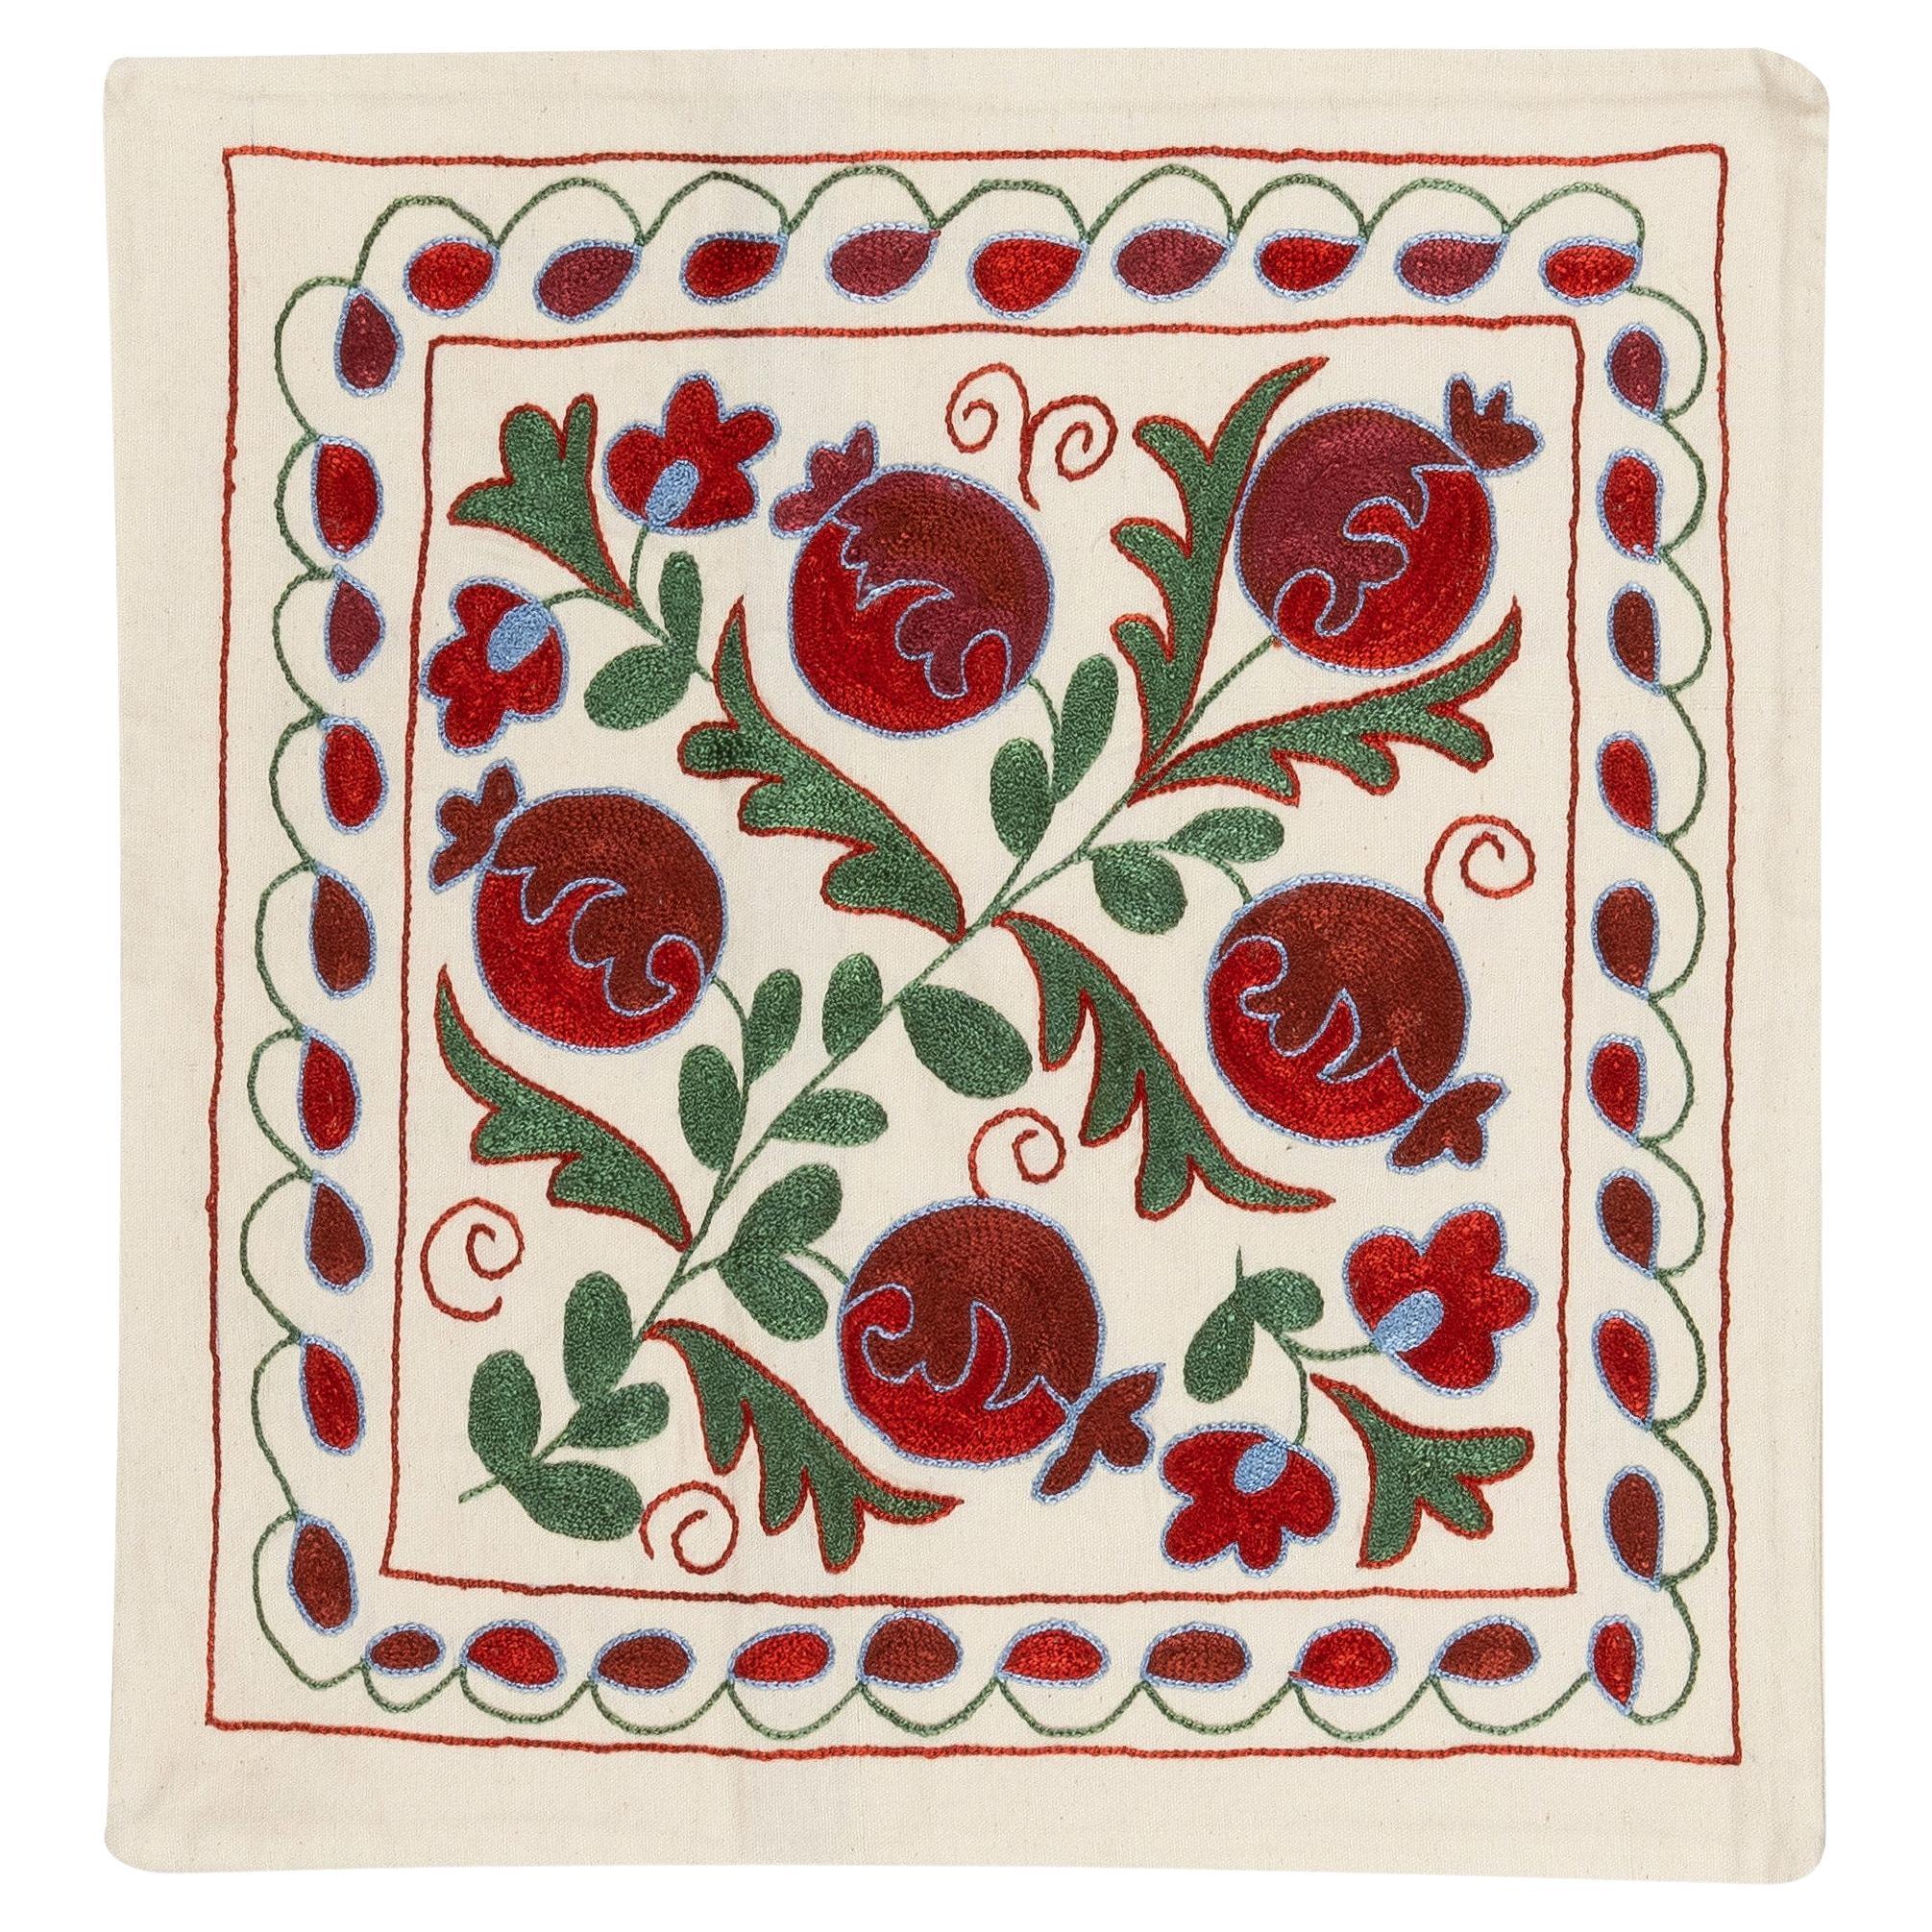 19 "x19" Dekorativer Suzani-Kissenbezug mit Seidenstickerei in Creme, Rot und Grün